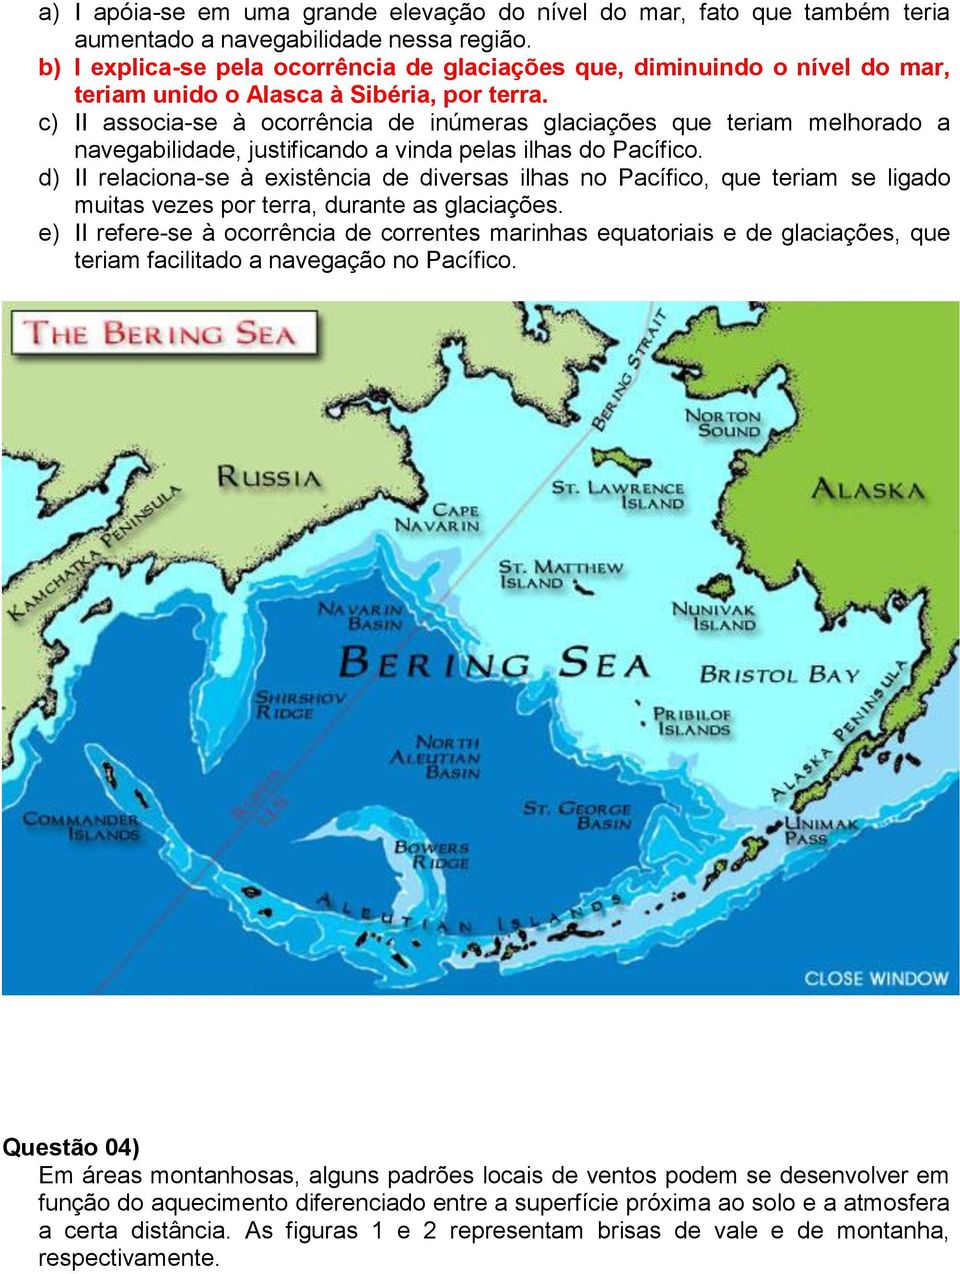 c) II associa-se à ocorrência de inúmeras glaciações que teriam melhorado a navegabilidade, justificando a vinda pelas ilhas do Pacífico.